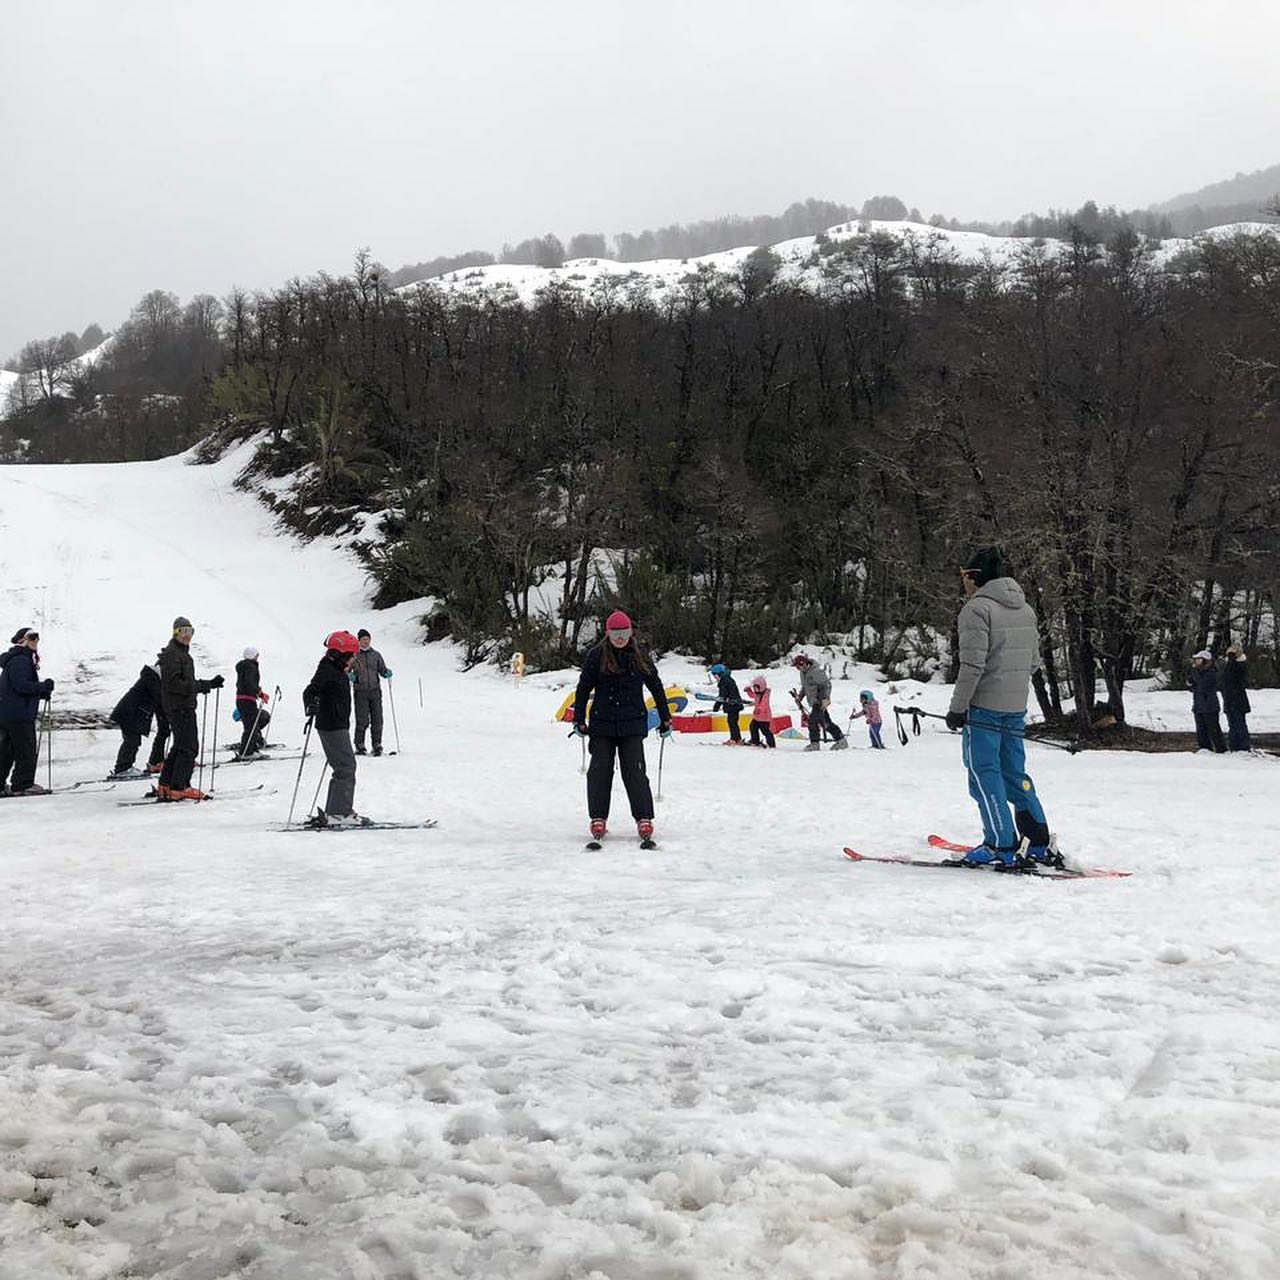 El centro de esquí cercano a lago Hermoso tendrá tres nuevas pistas de esquí gracias a la instalación de una aerosilla. (Gentileza).-